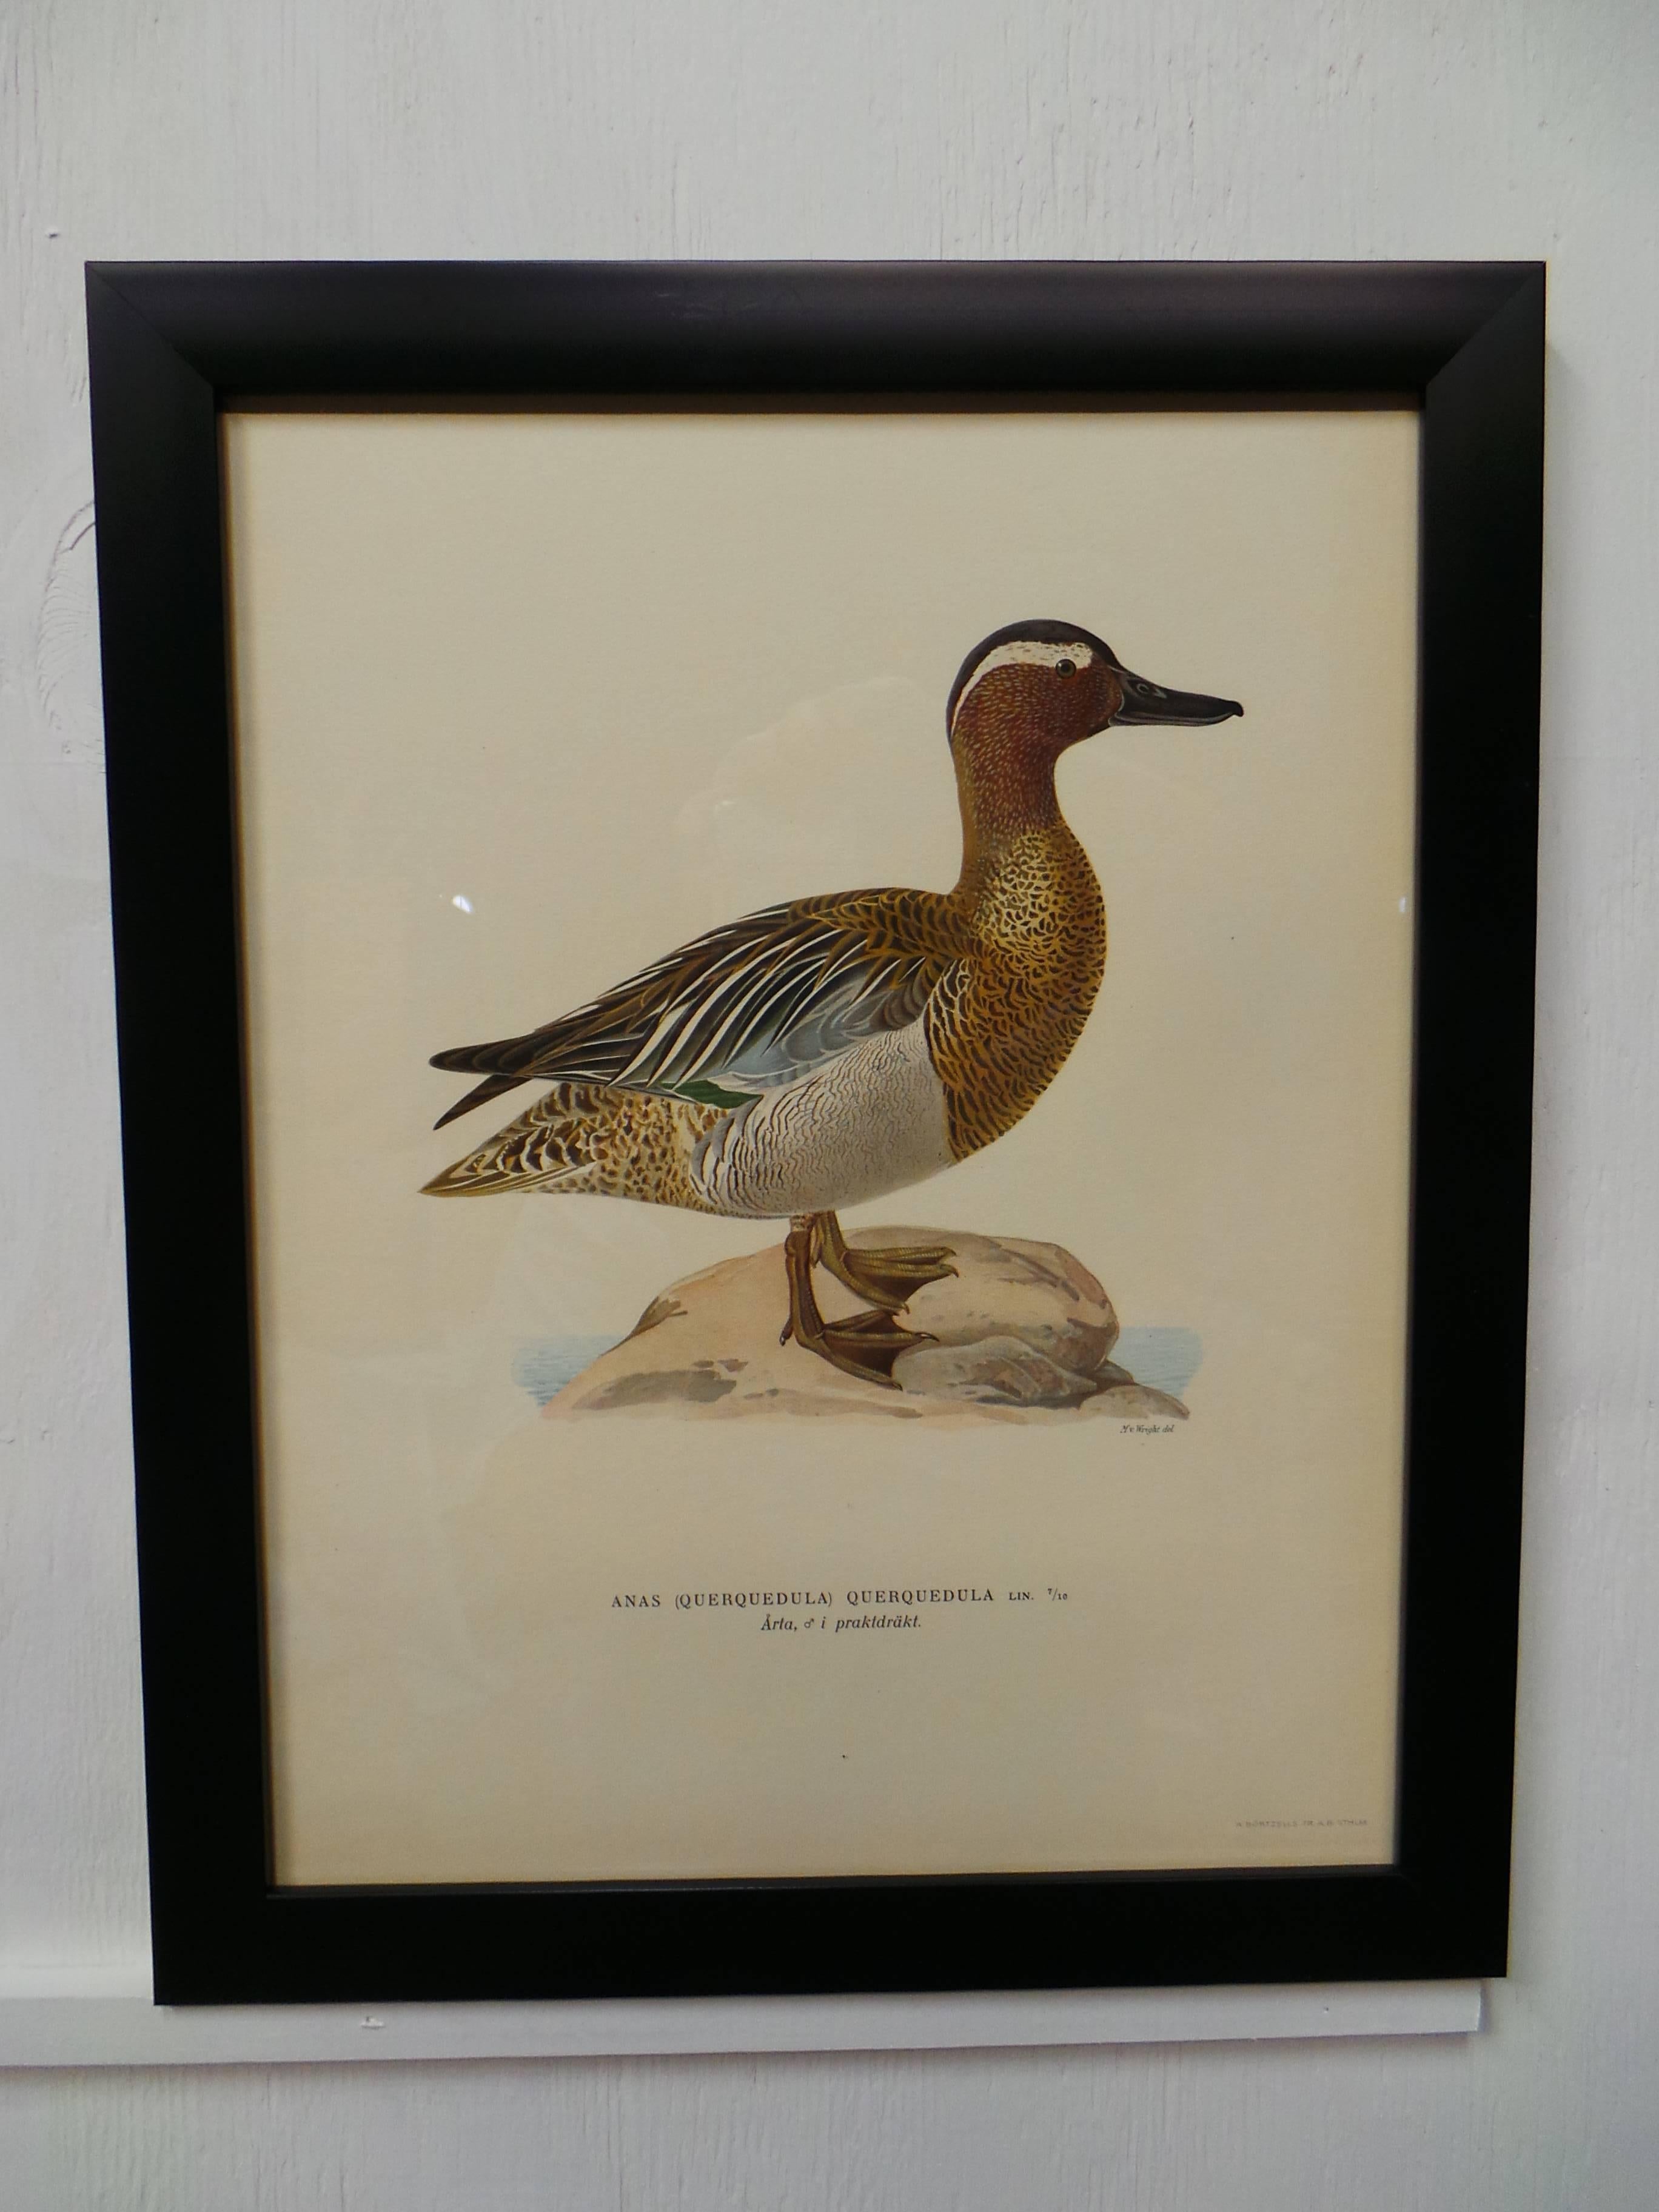 Il s'agit d'un ensemble de quatre impressions d'oiseaux aquatiques suédois encadrées, toutes datées de 1929. Imprimé par Finpappersbrukens Forsalfnings AB. à Stockholm, Suède.
 